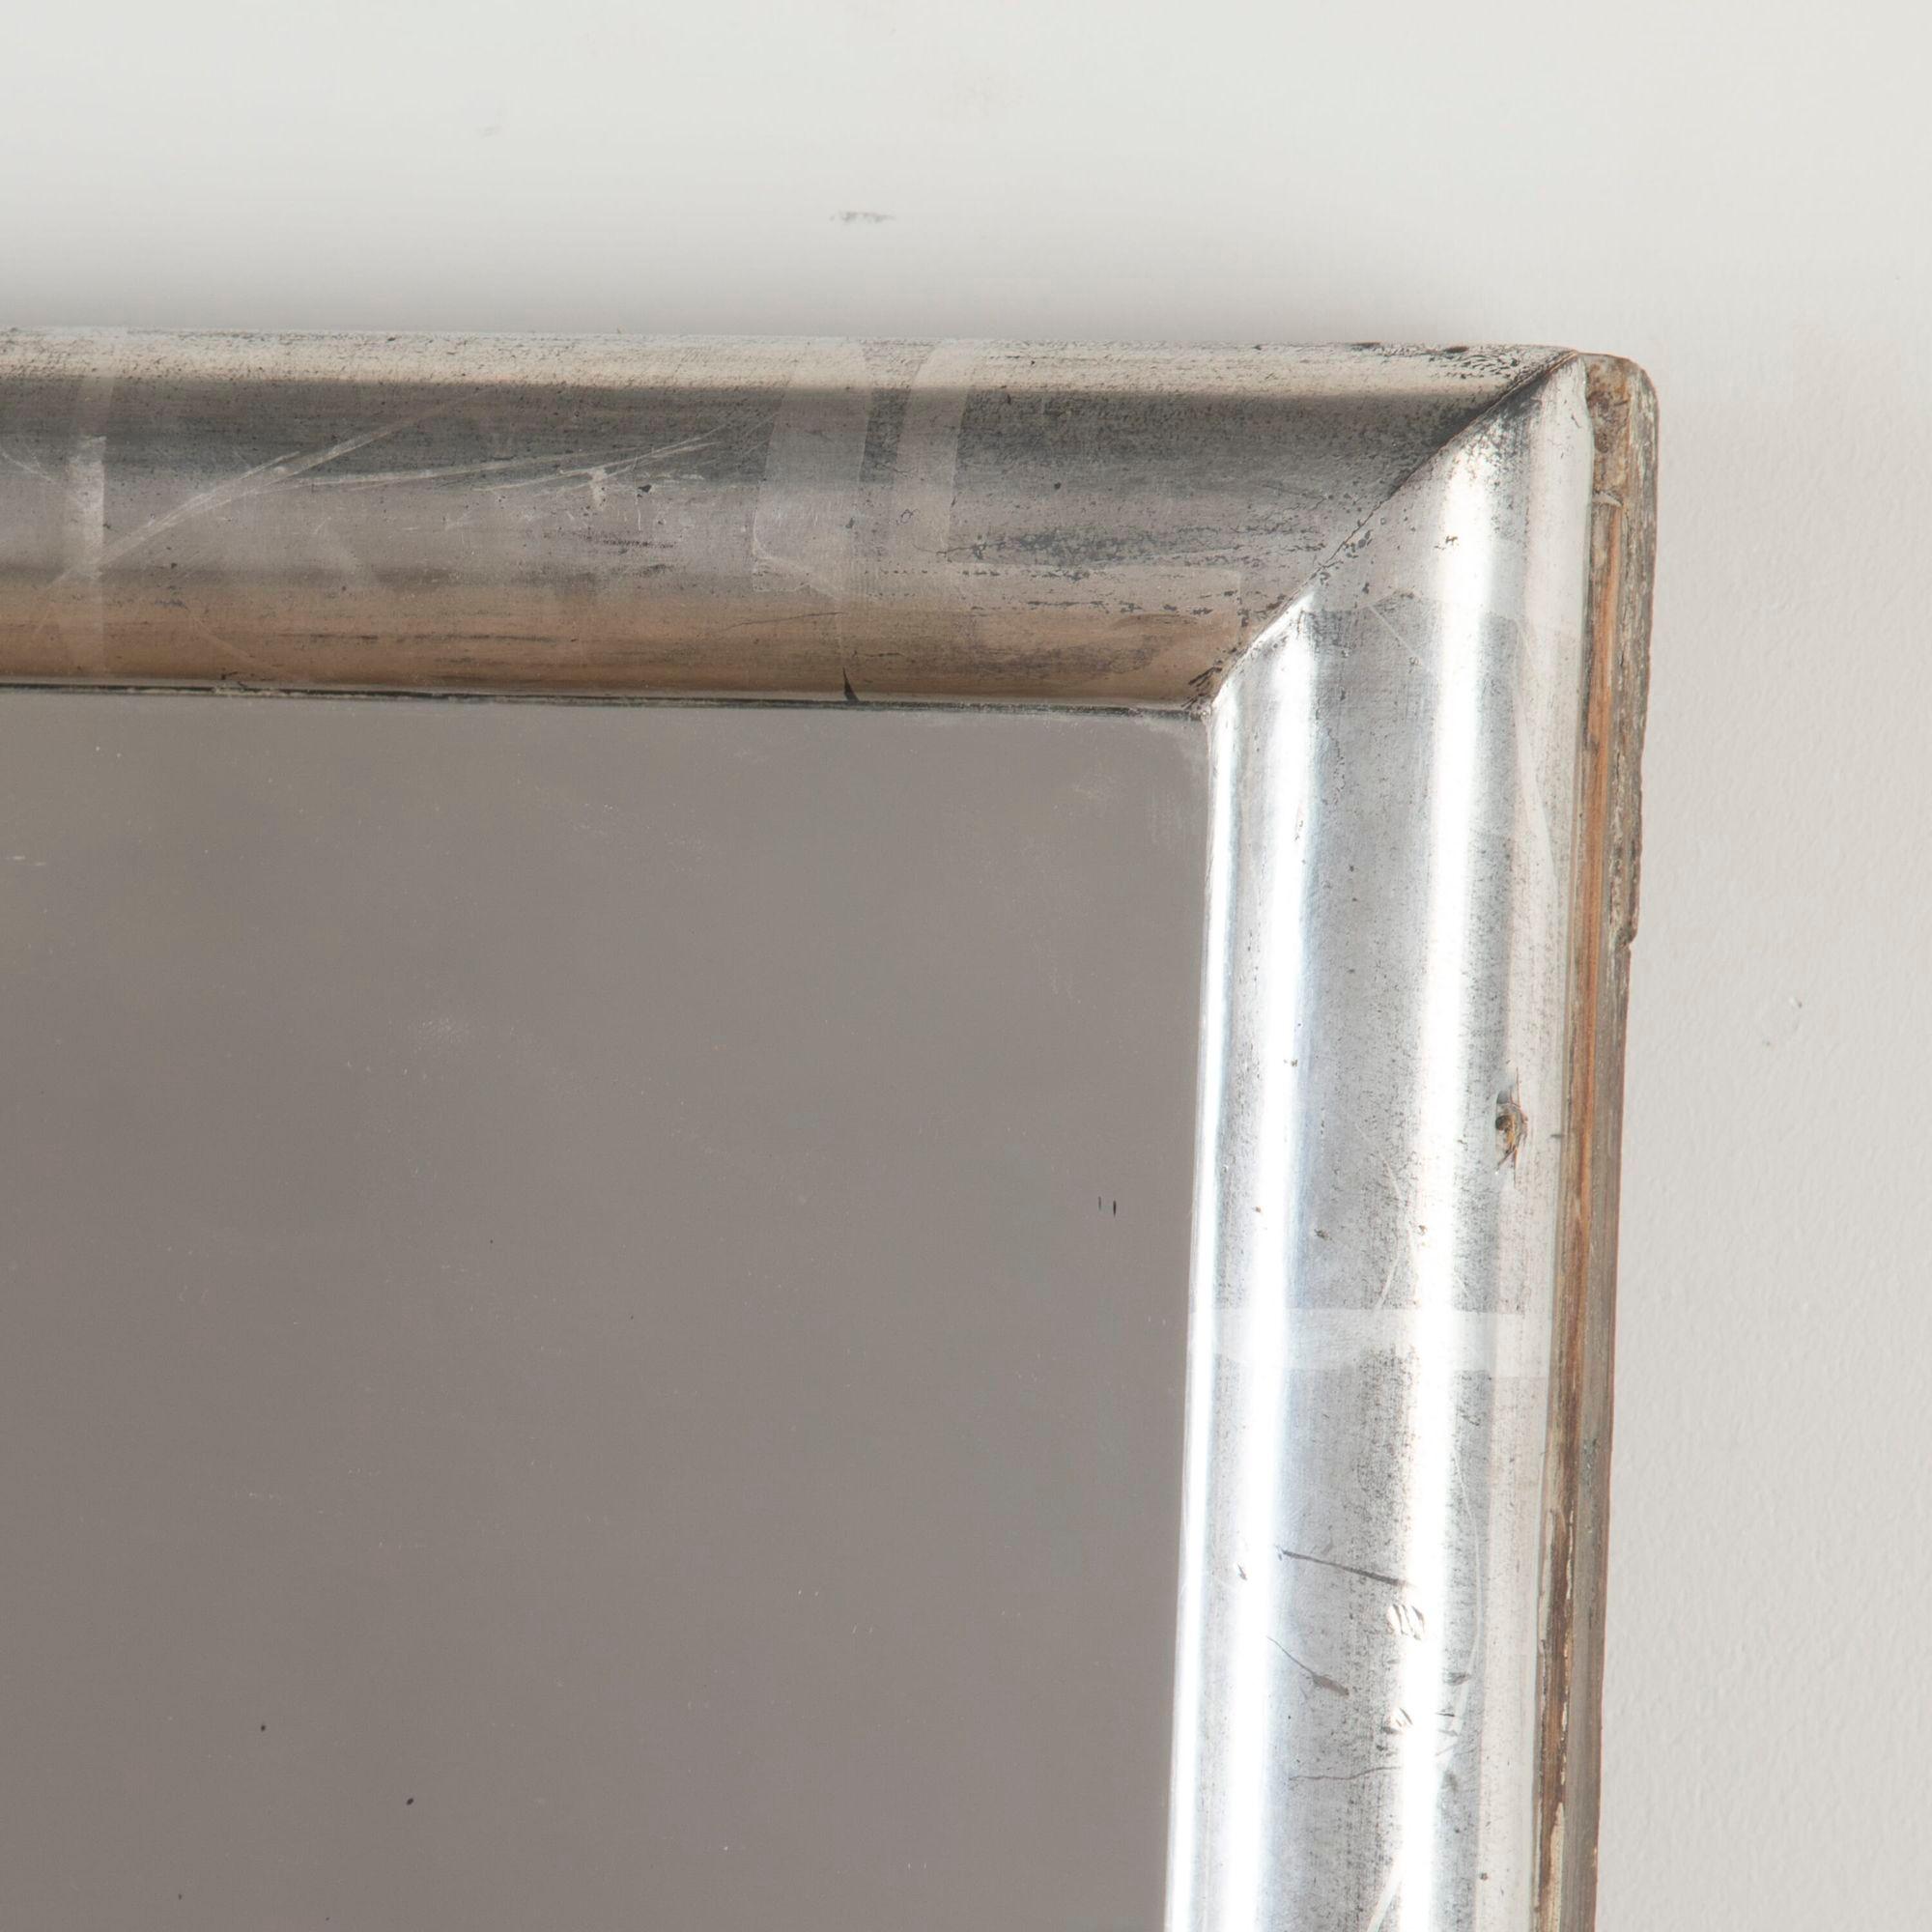 Miroir de bistrot en argent de la fin du XIXe siècle avec plaque d'origine.
Ces cadres d'une élégante simplicité étaient très modernes à leur époque, faisant écho au dédain des impressionnistes pour toute décoration apparente.
Ils étaient